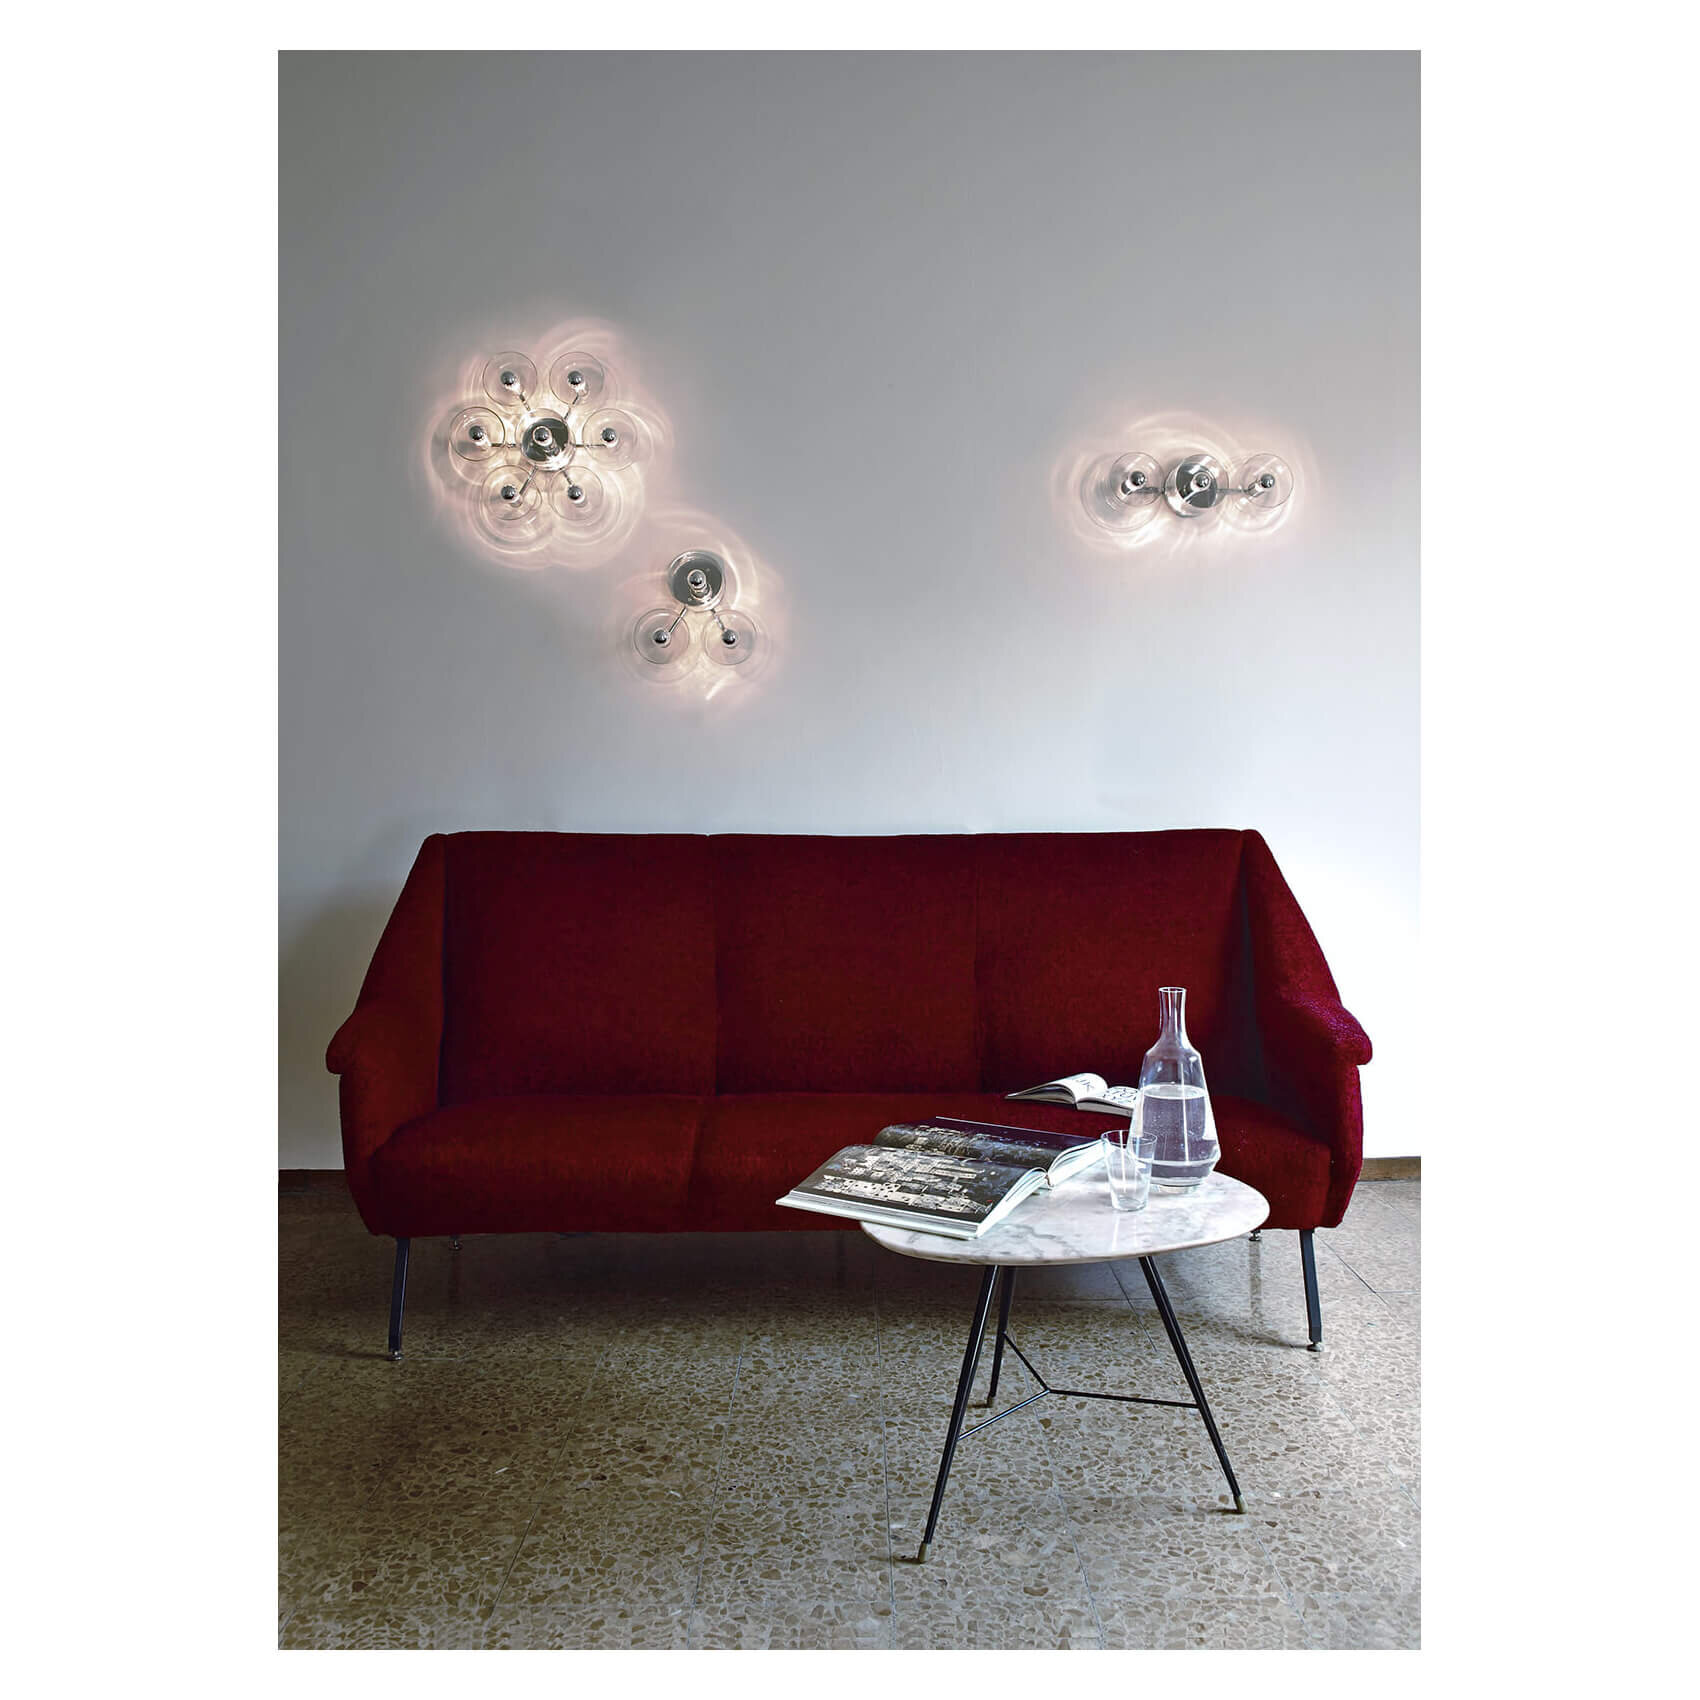 Oluce Fiore 壁燈用於客廳沙發上